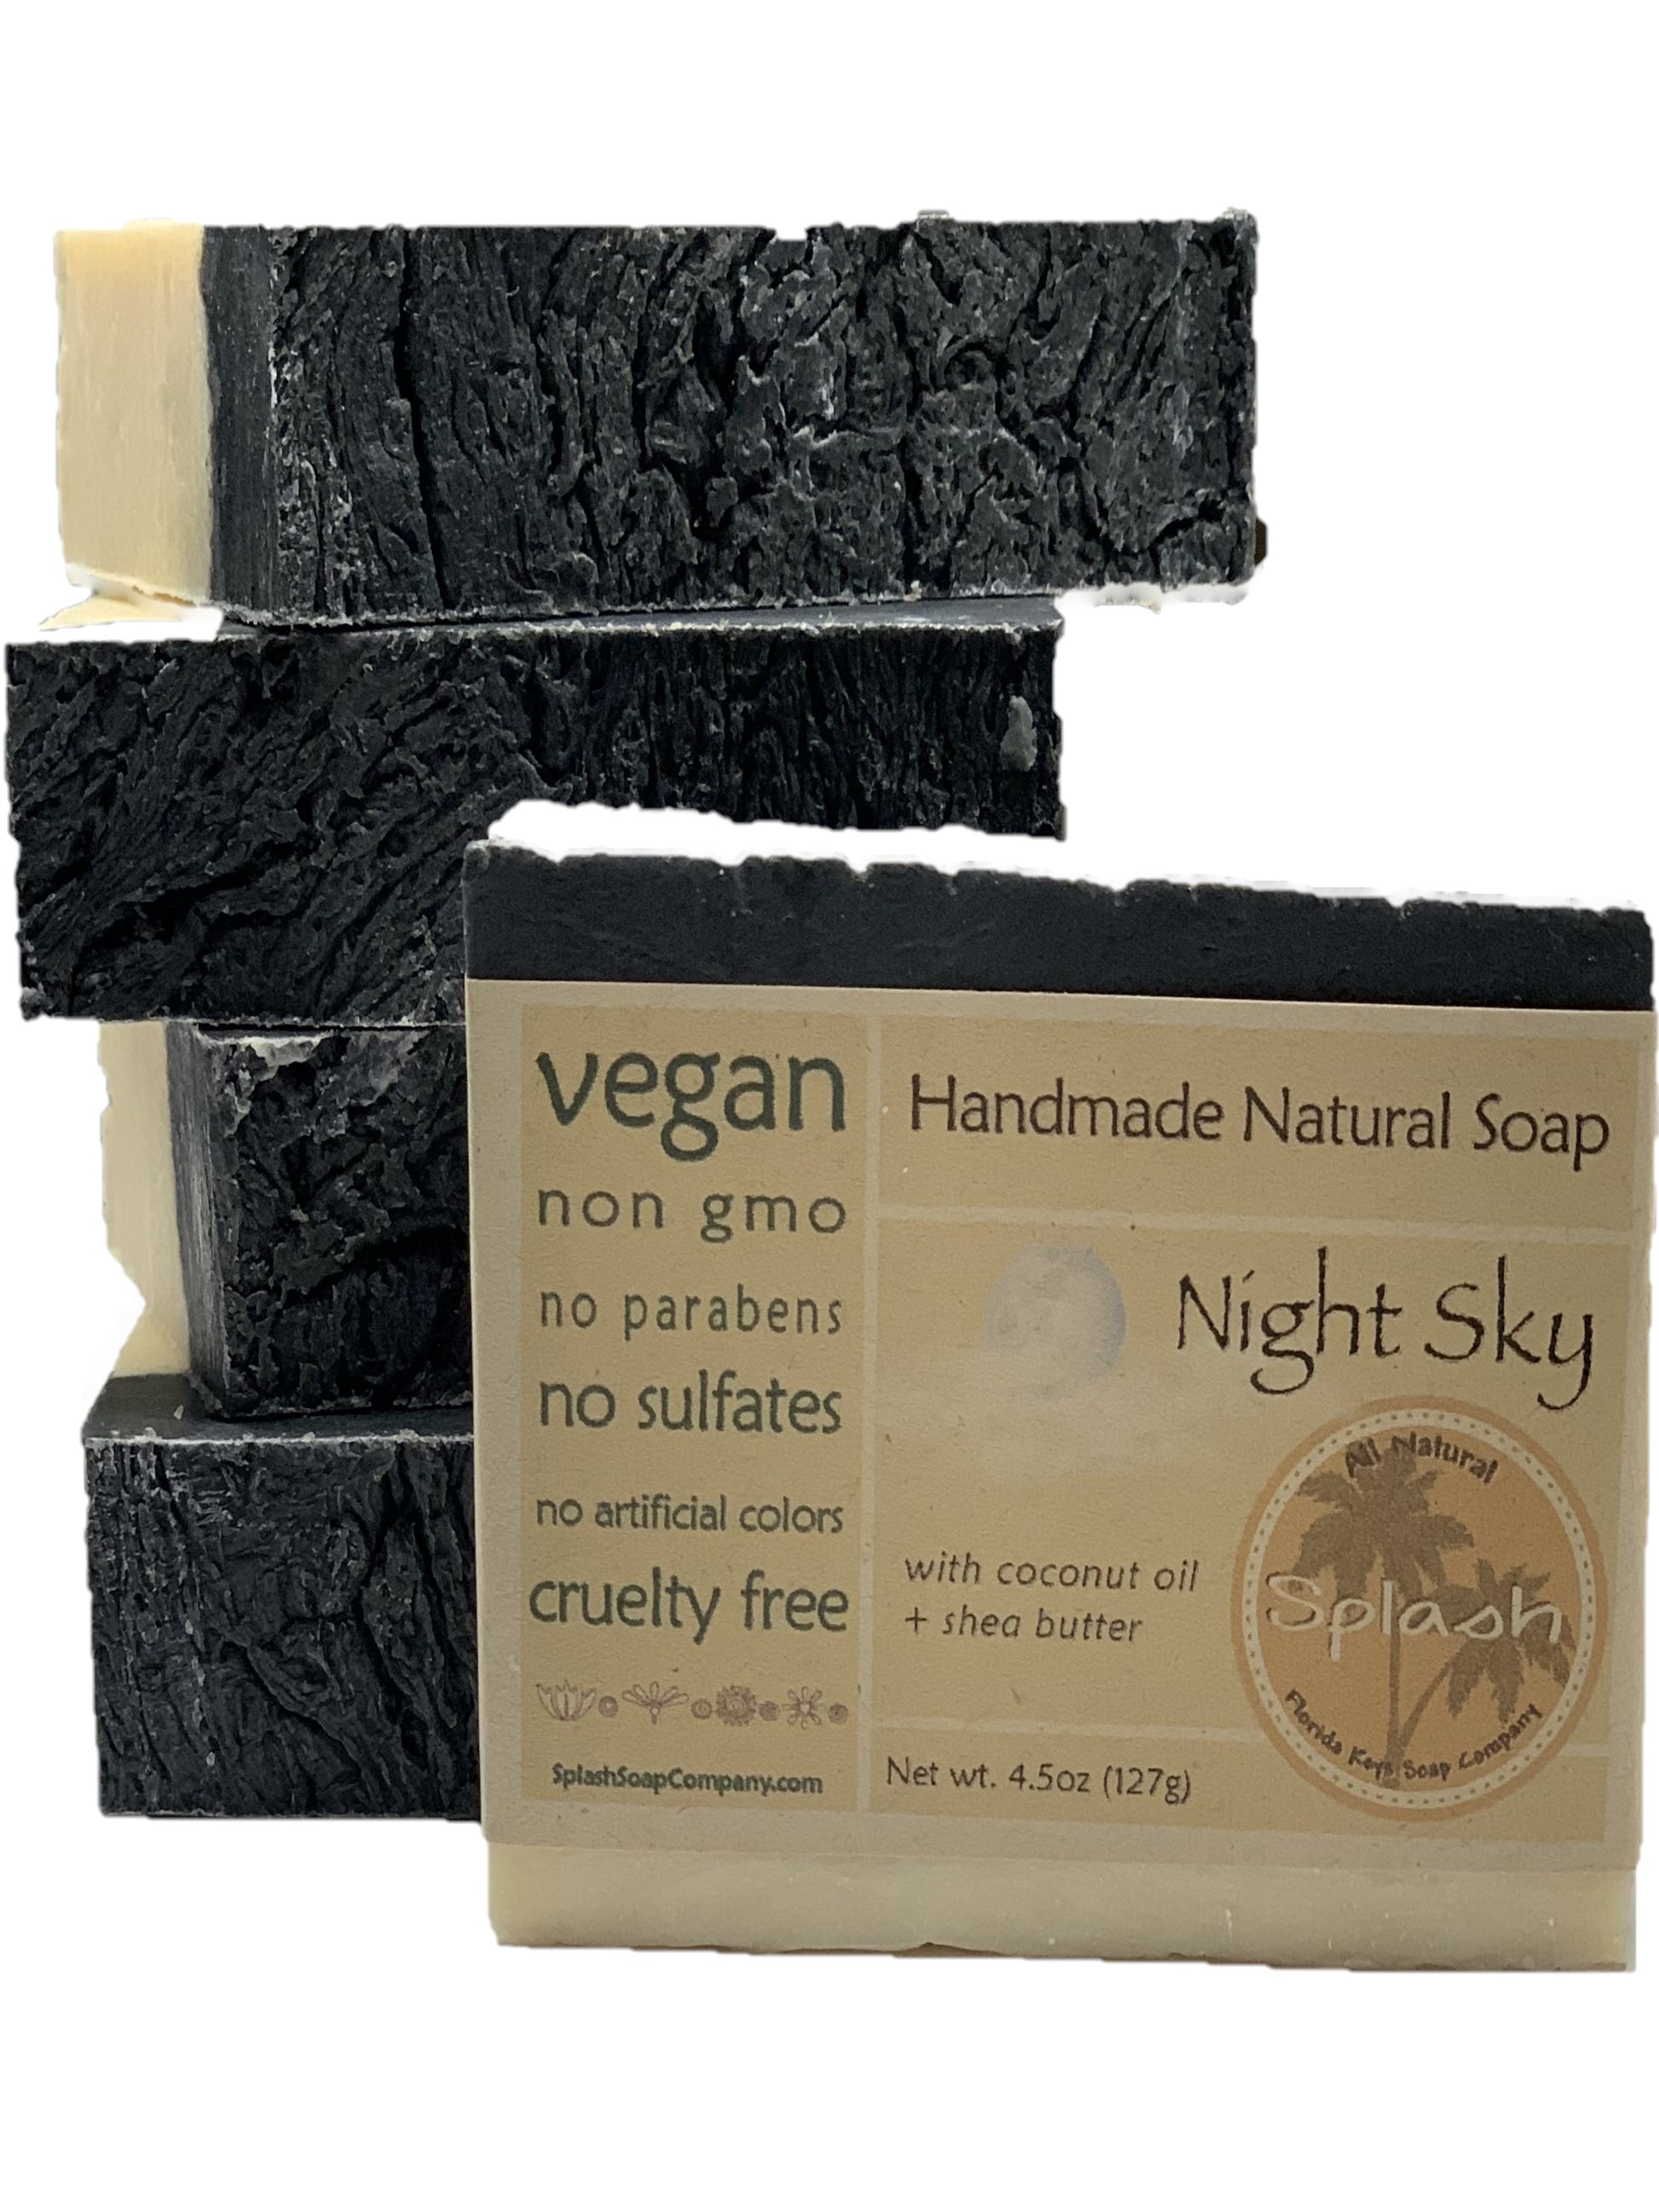 Night Sky - Splash Soap Company